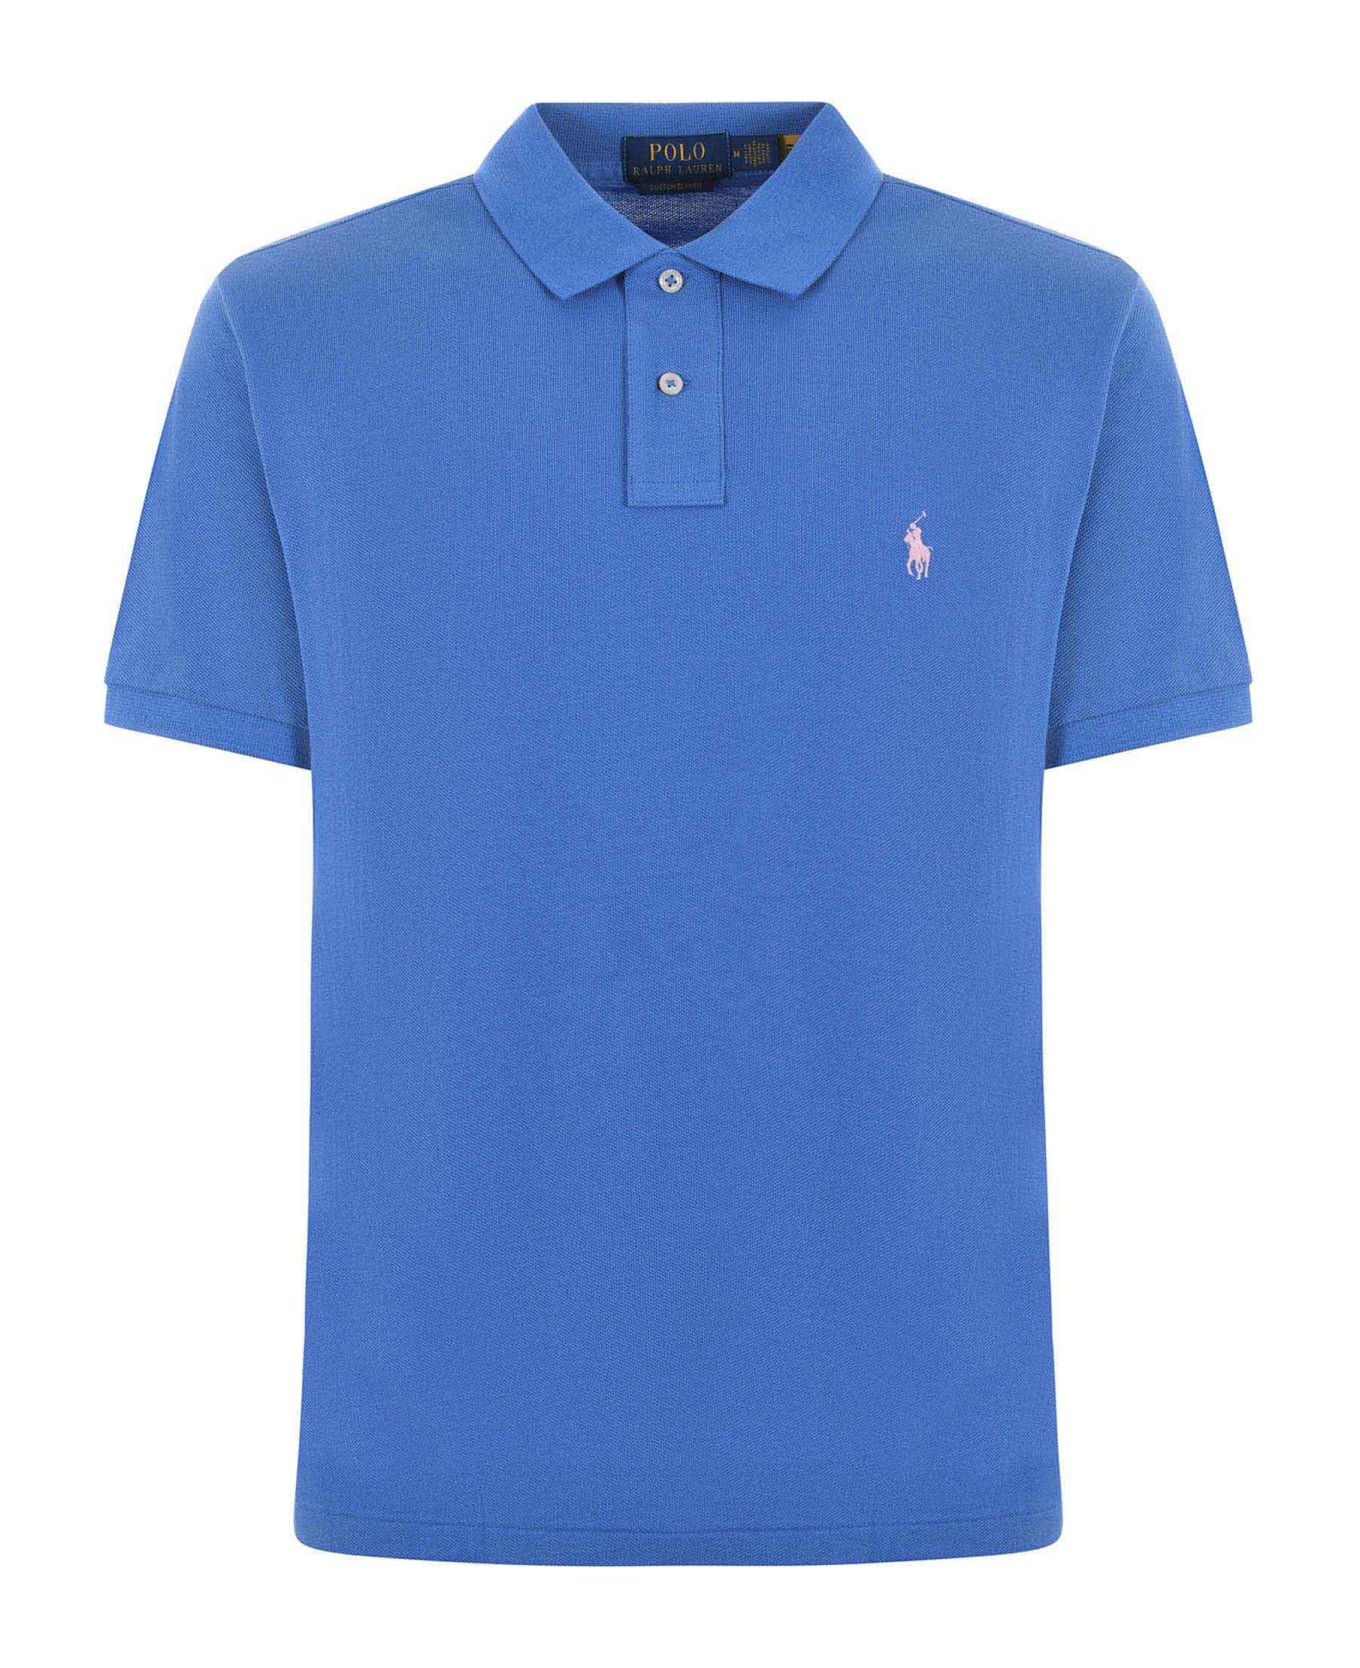 Polo Ralph Lauren "polo Ralph Lauren" Polo Shirt - Azzurro ポロシャツ